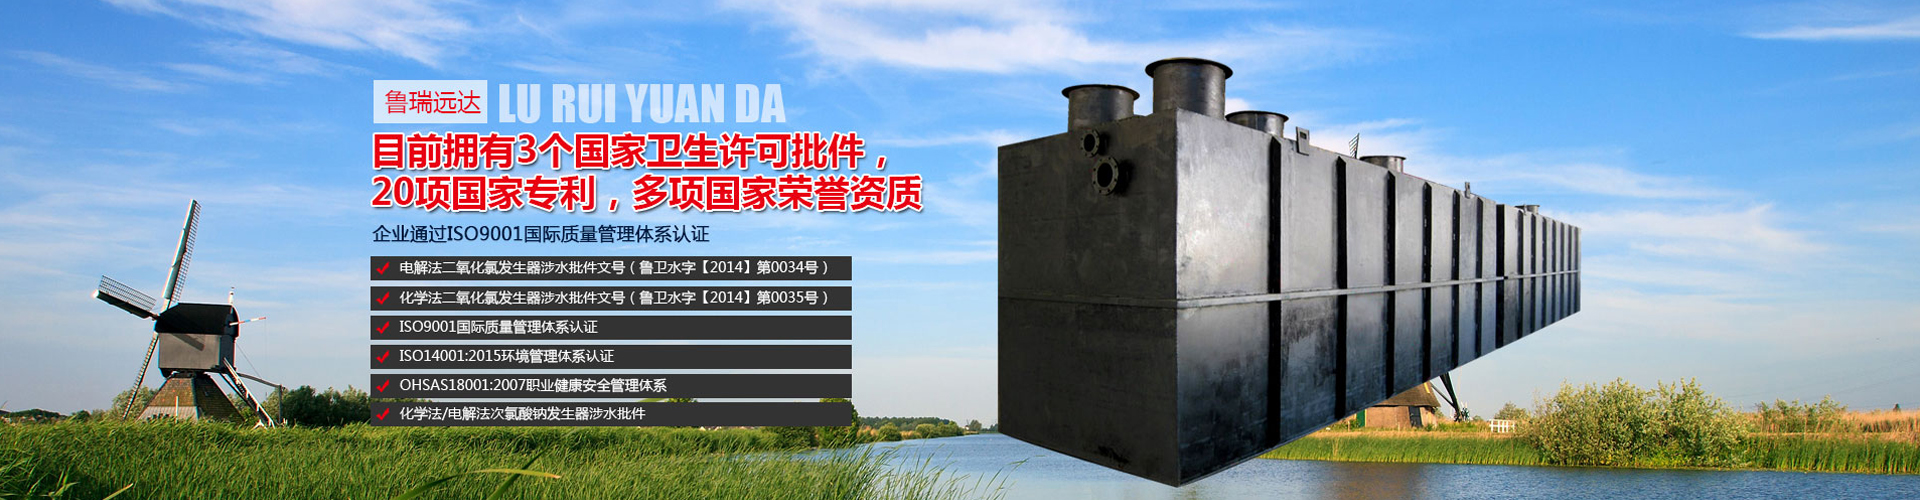 潍坊鲁瑞环保水处理设备有限公司